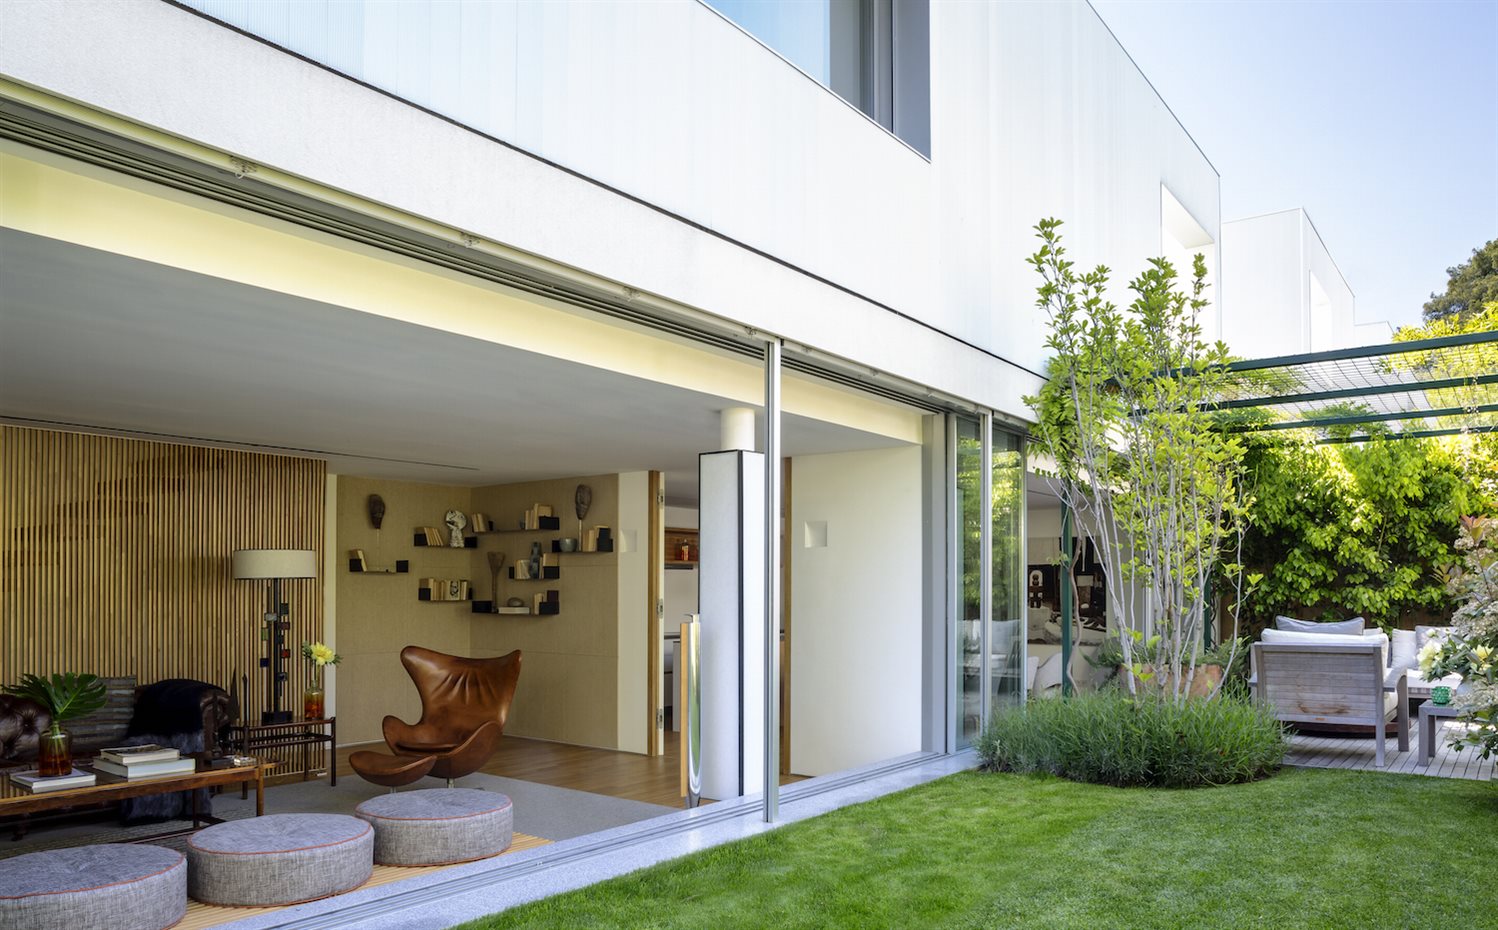  A7B4611. Con finos perfiles de 20 mm, las carpinterías metálicas de la firma suiza Panoramah consiguen meter el jardín en la casa